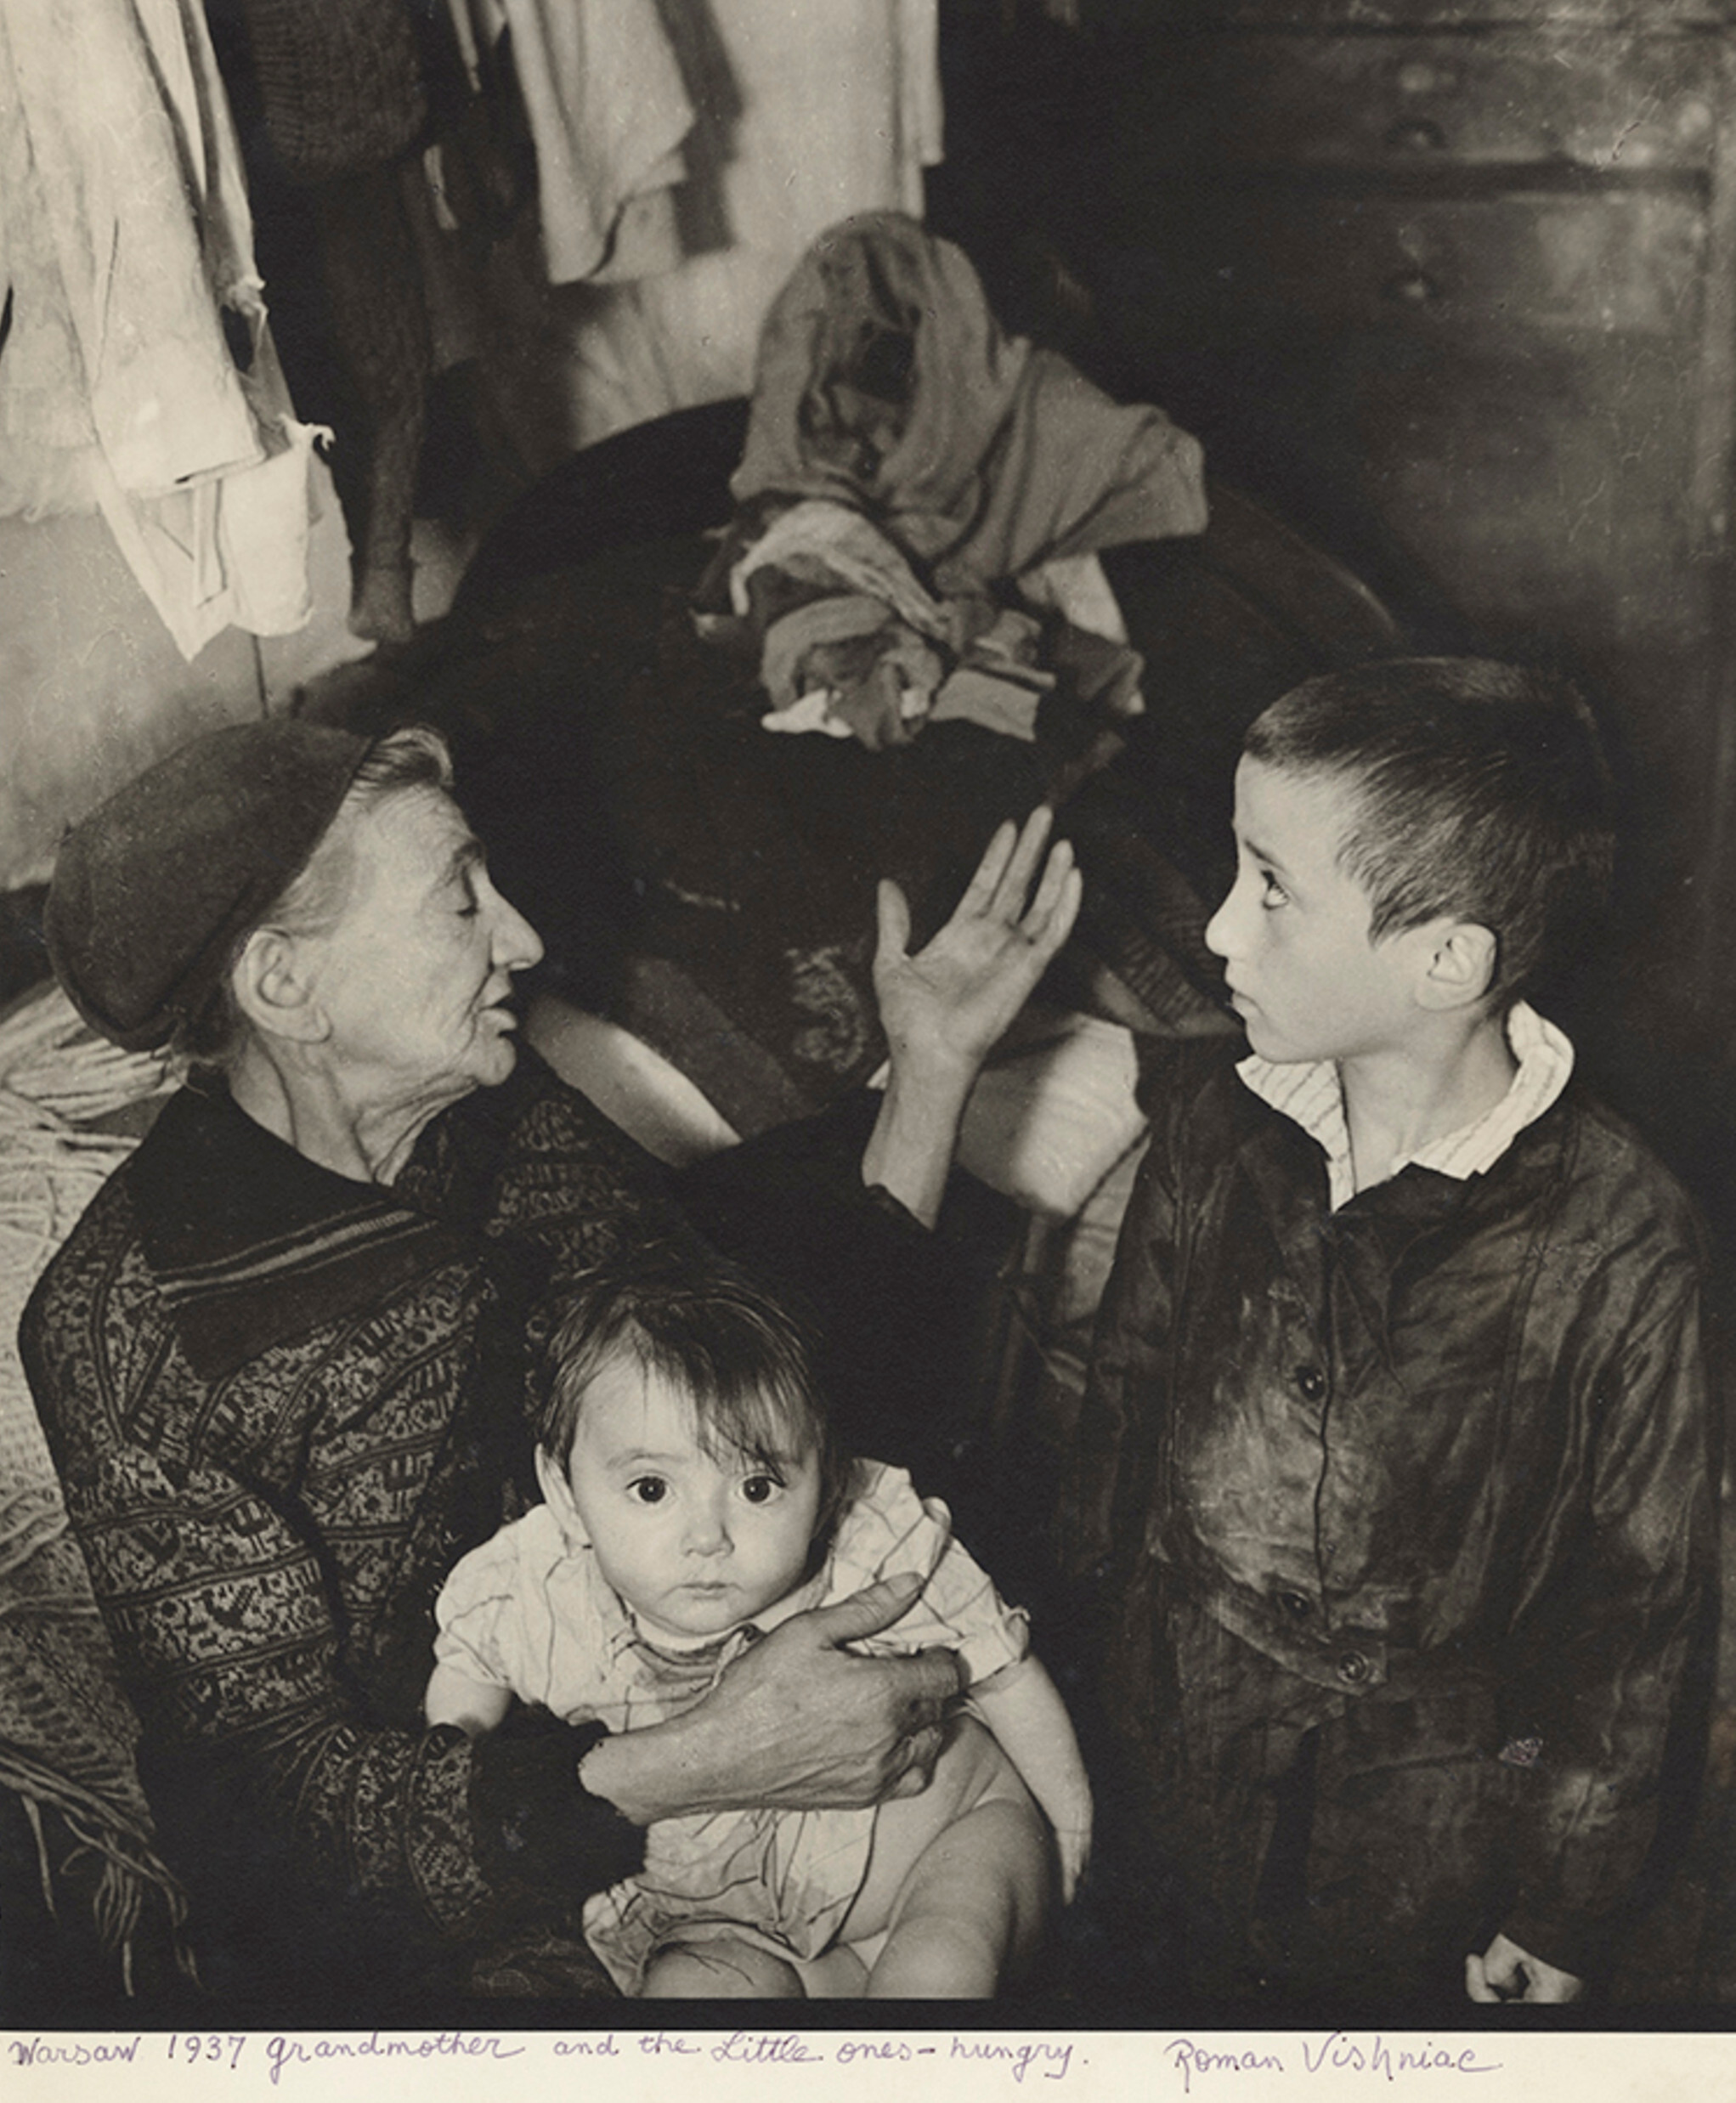 Бабушка и внуки в подвальном помещении, улица Крохмальная, Варшава, ок. 1935-38 гг. Фотограф Роман Вишняк